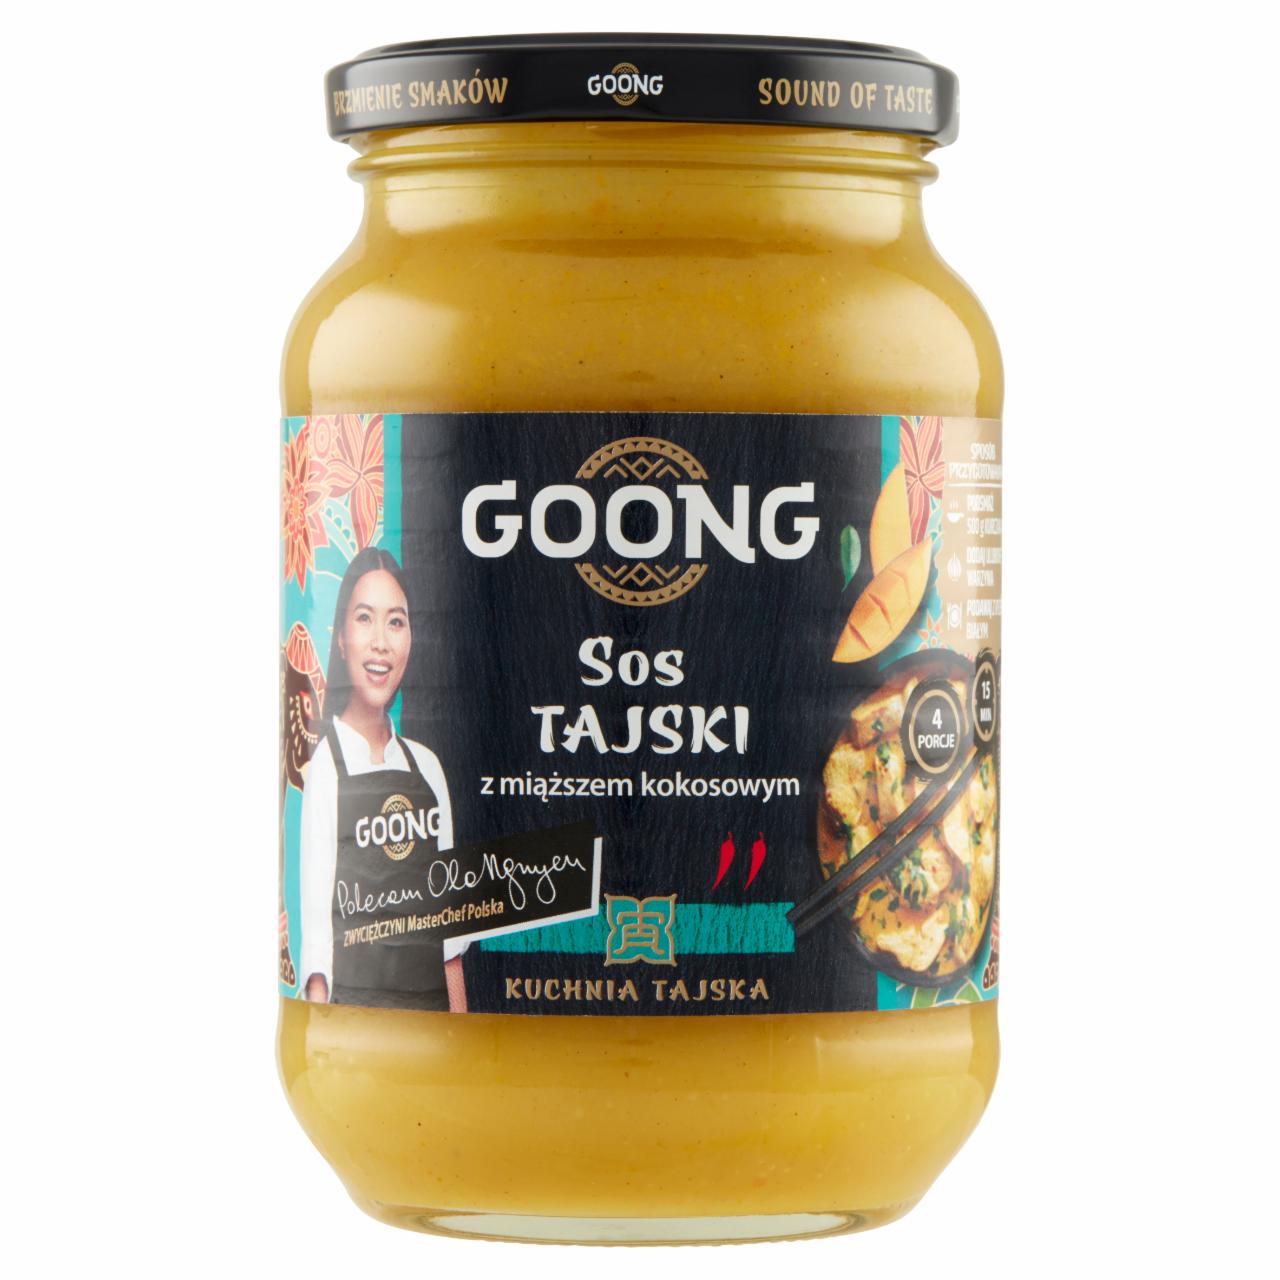 Zdjęcia - Goong Sos tajski z miąższem kokosowym 450 g